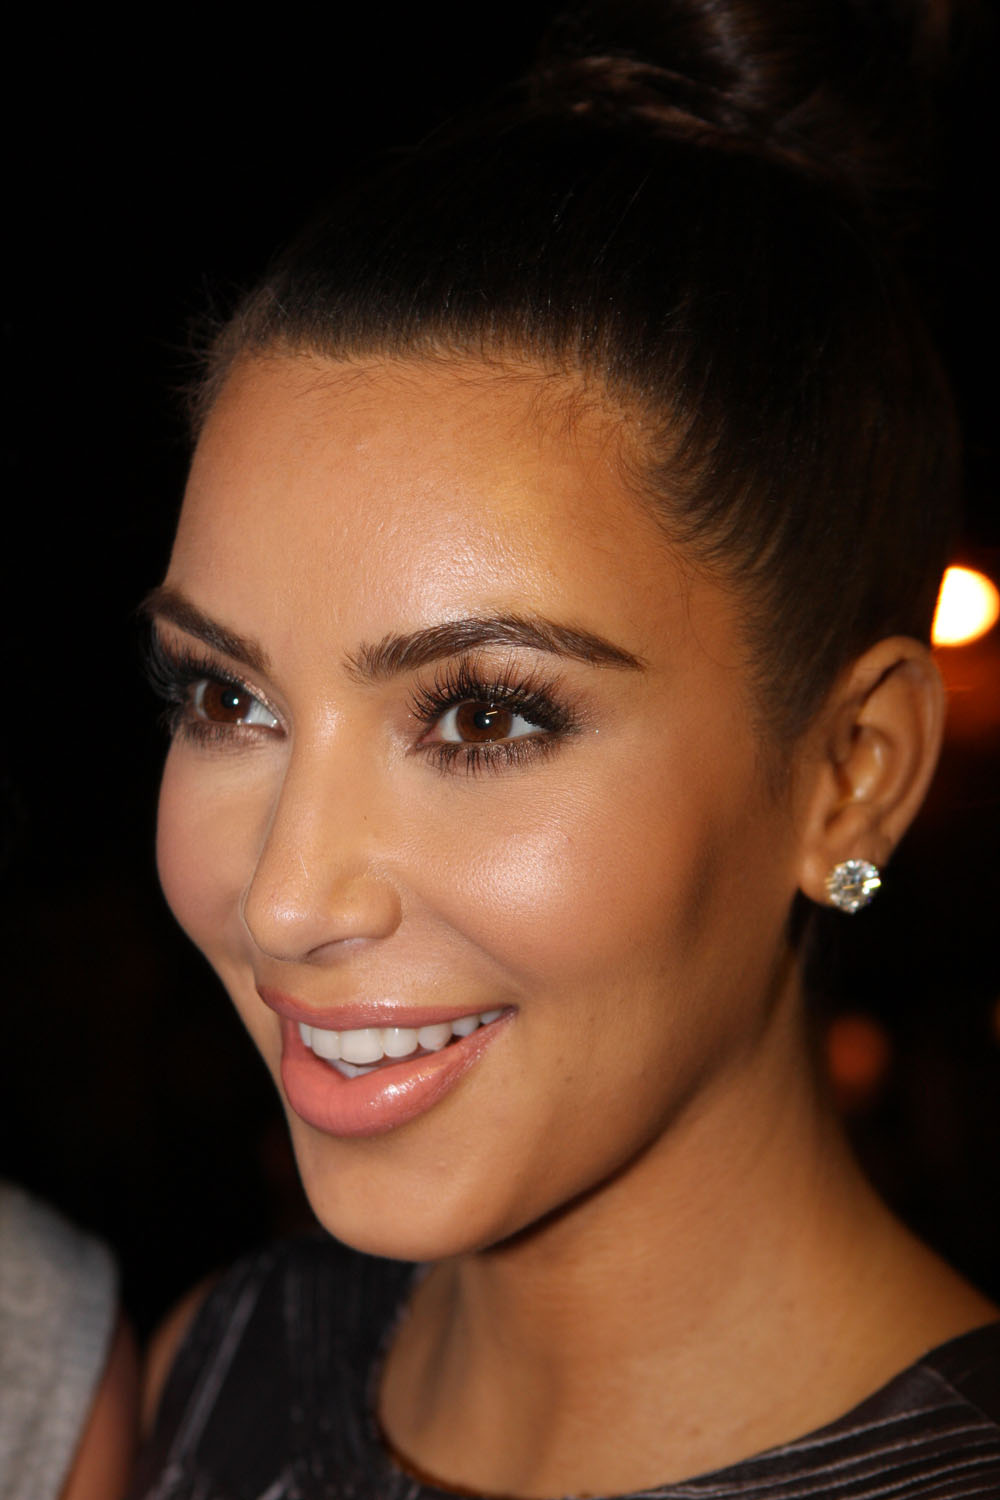 Kim Kardashian celebrity skincare routine